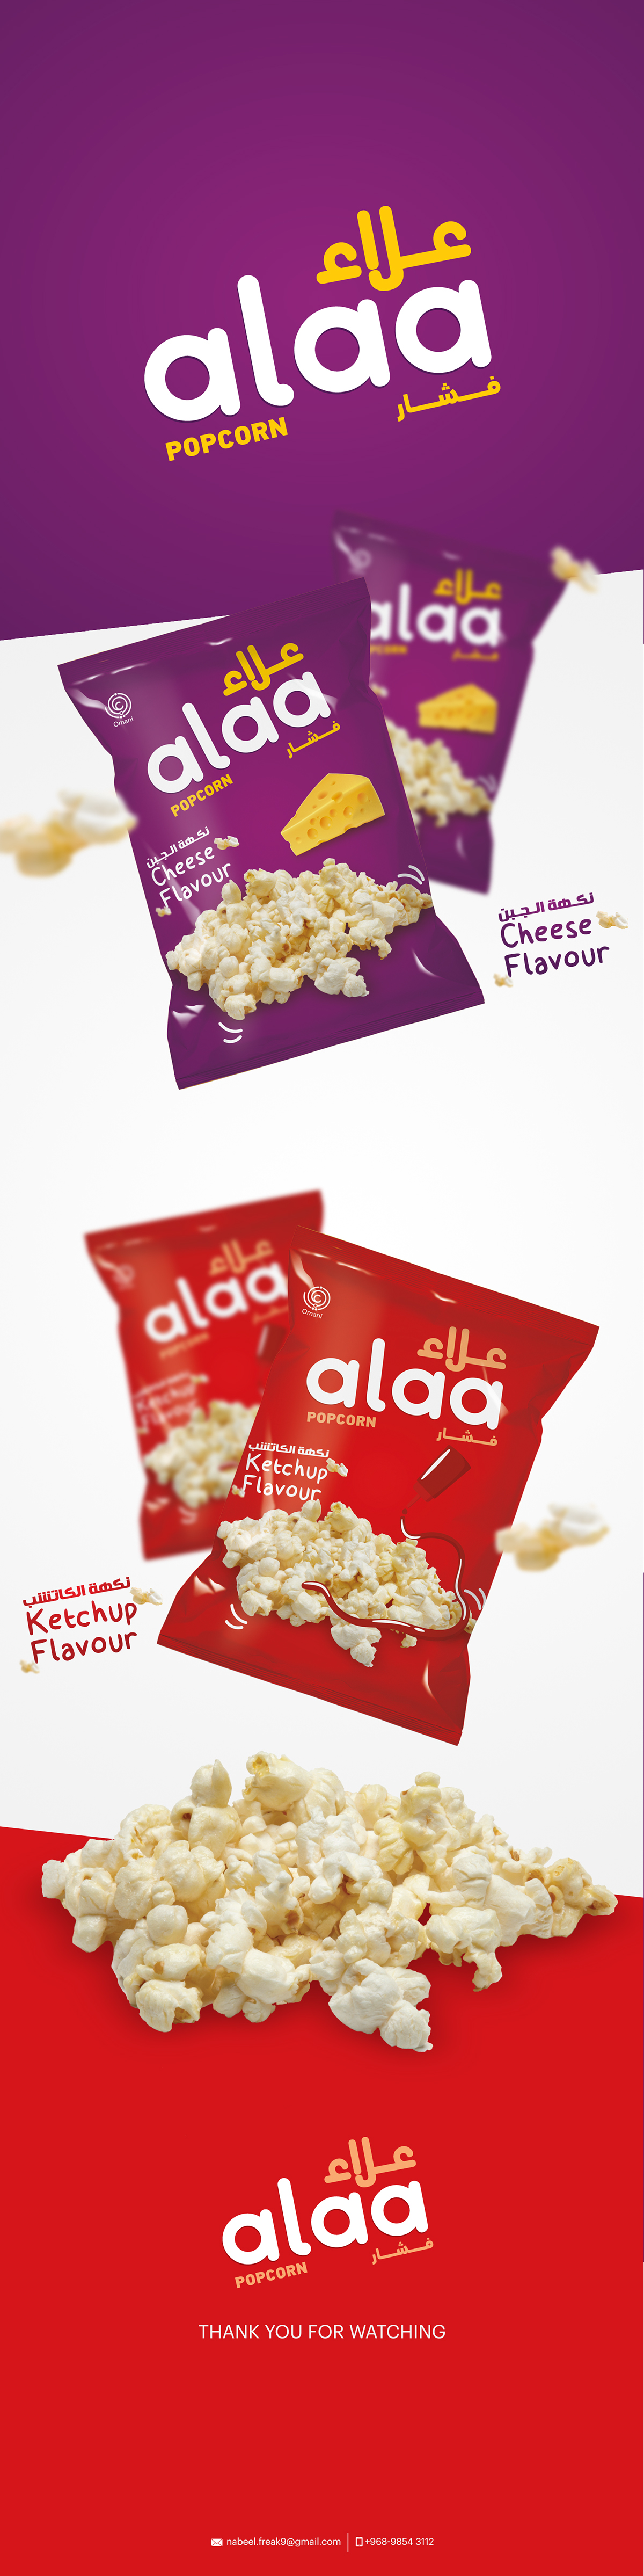 popcorn packagedesign package desig